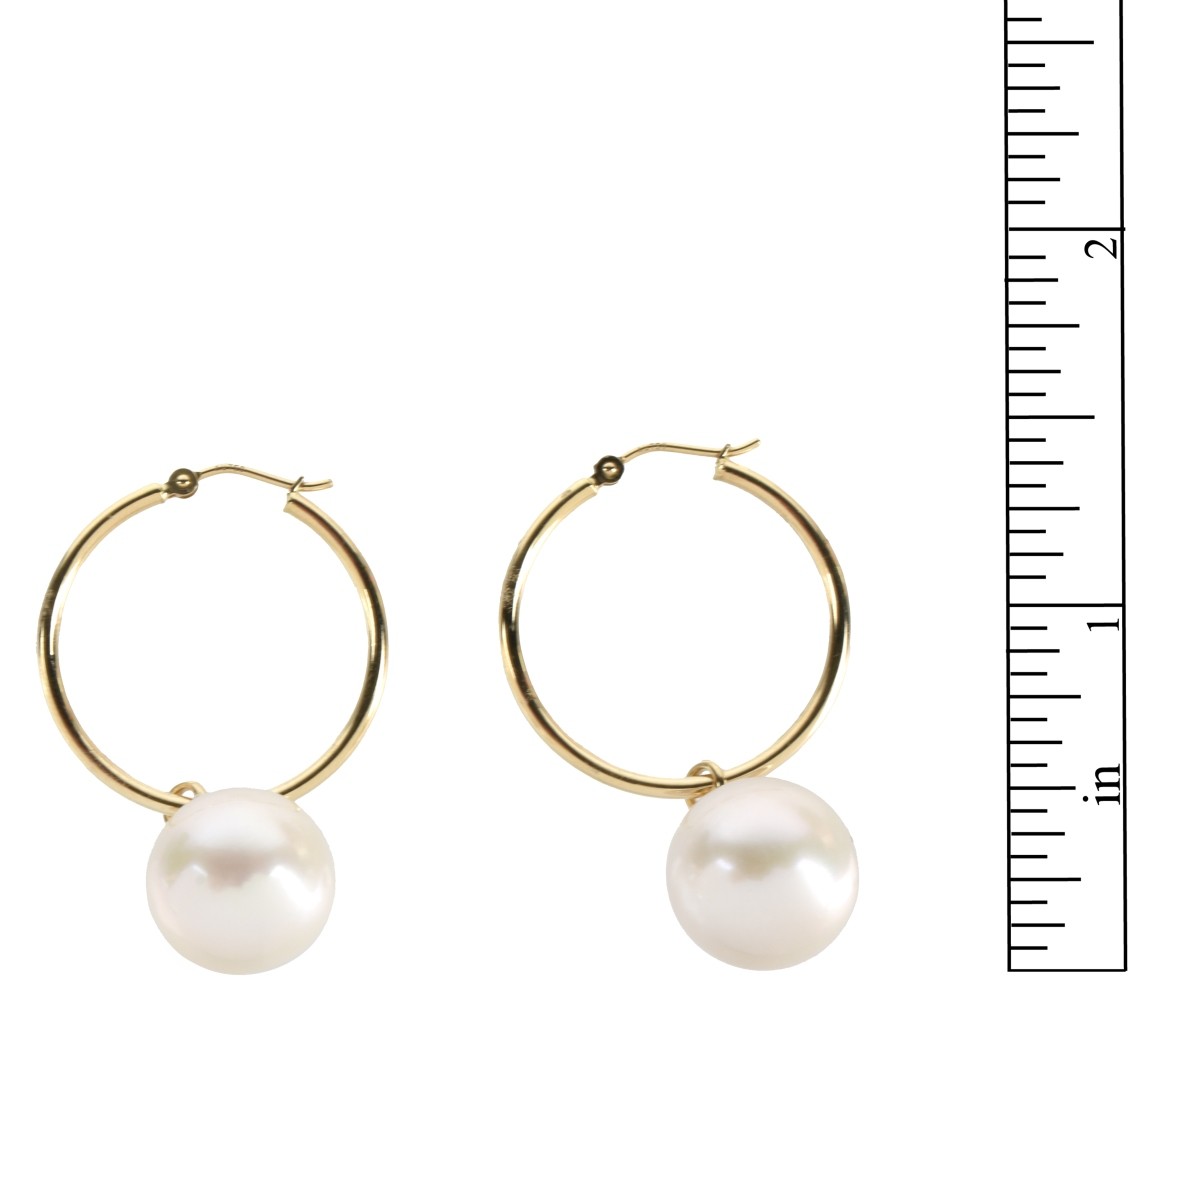 Pearl and 18K Earrings